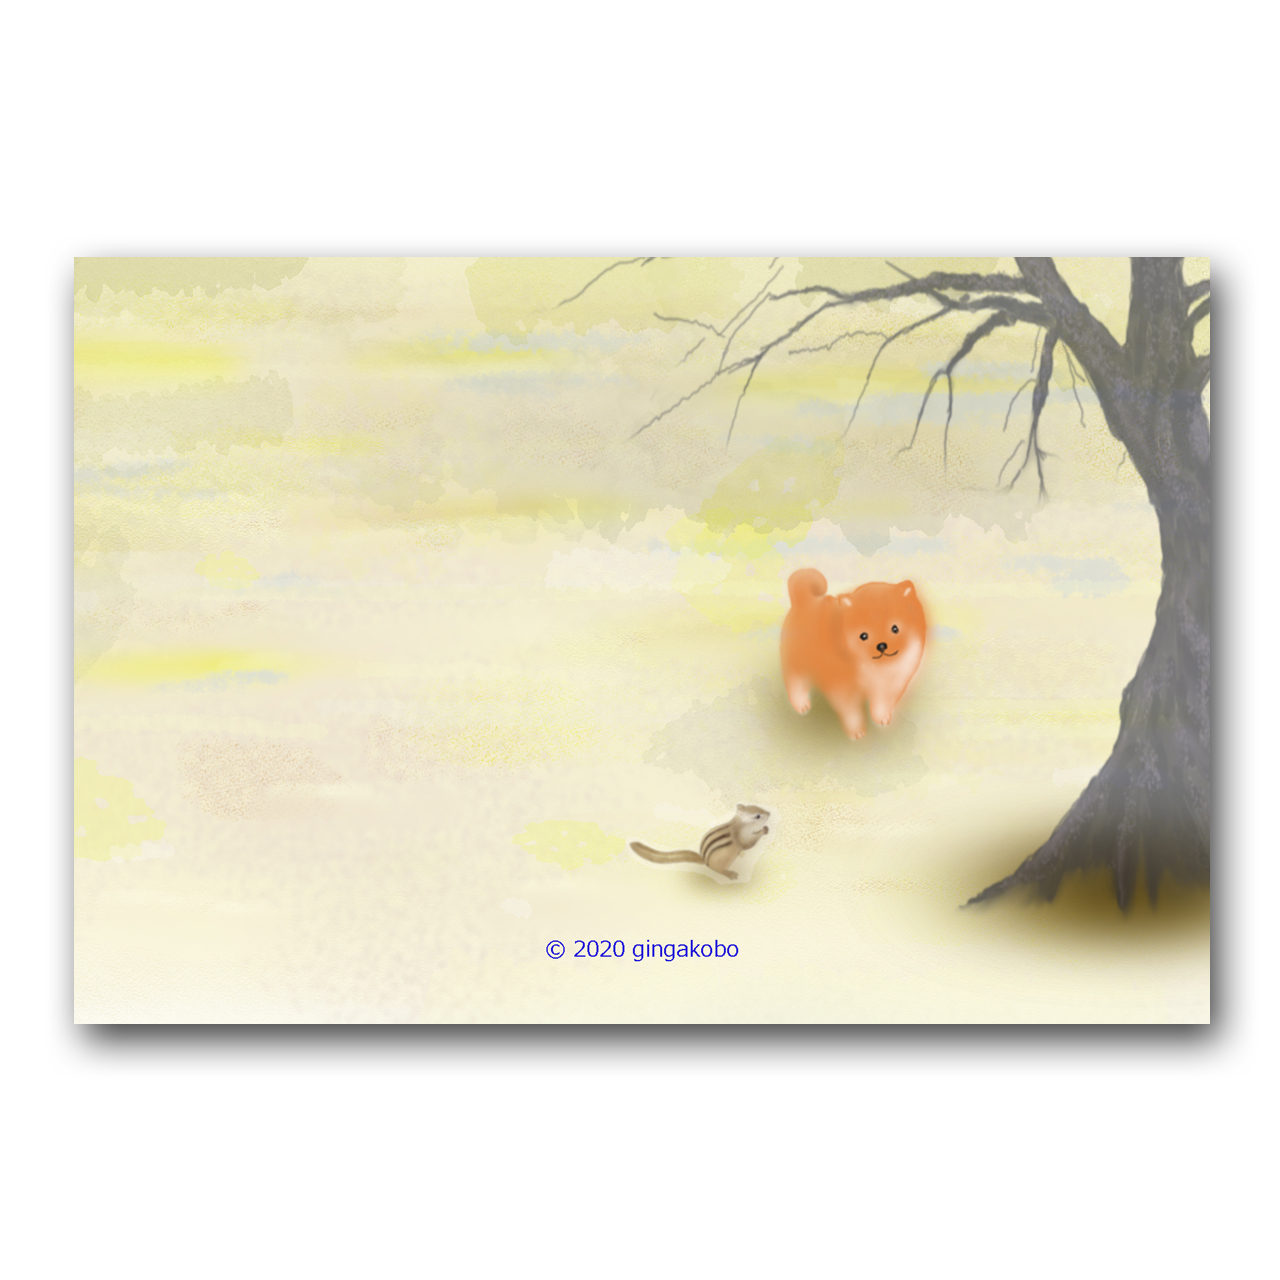 冬支度中なの 遊ぼうよ 豆柴 リス 犬 ほっこり癒しのイラストポストカード2枚組 No 1222 Iichi ハンドメイド クラフト作品 手仕事品の通販